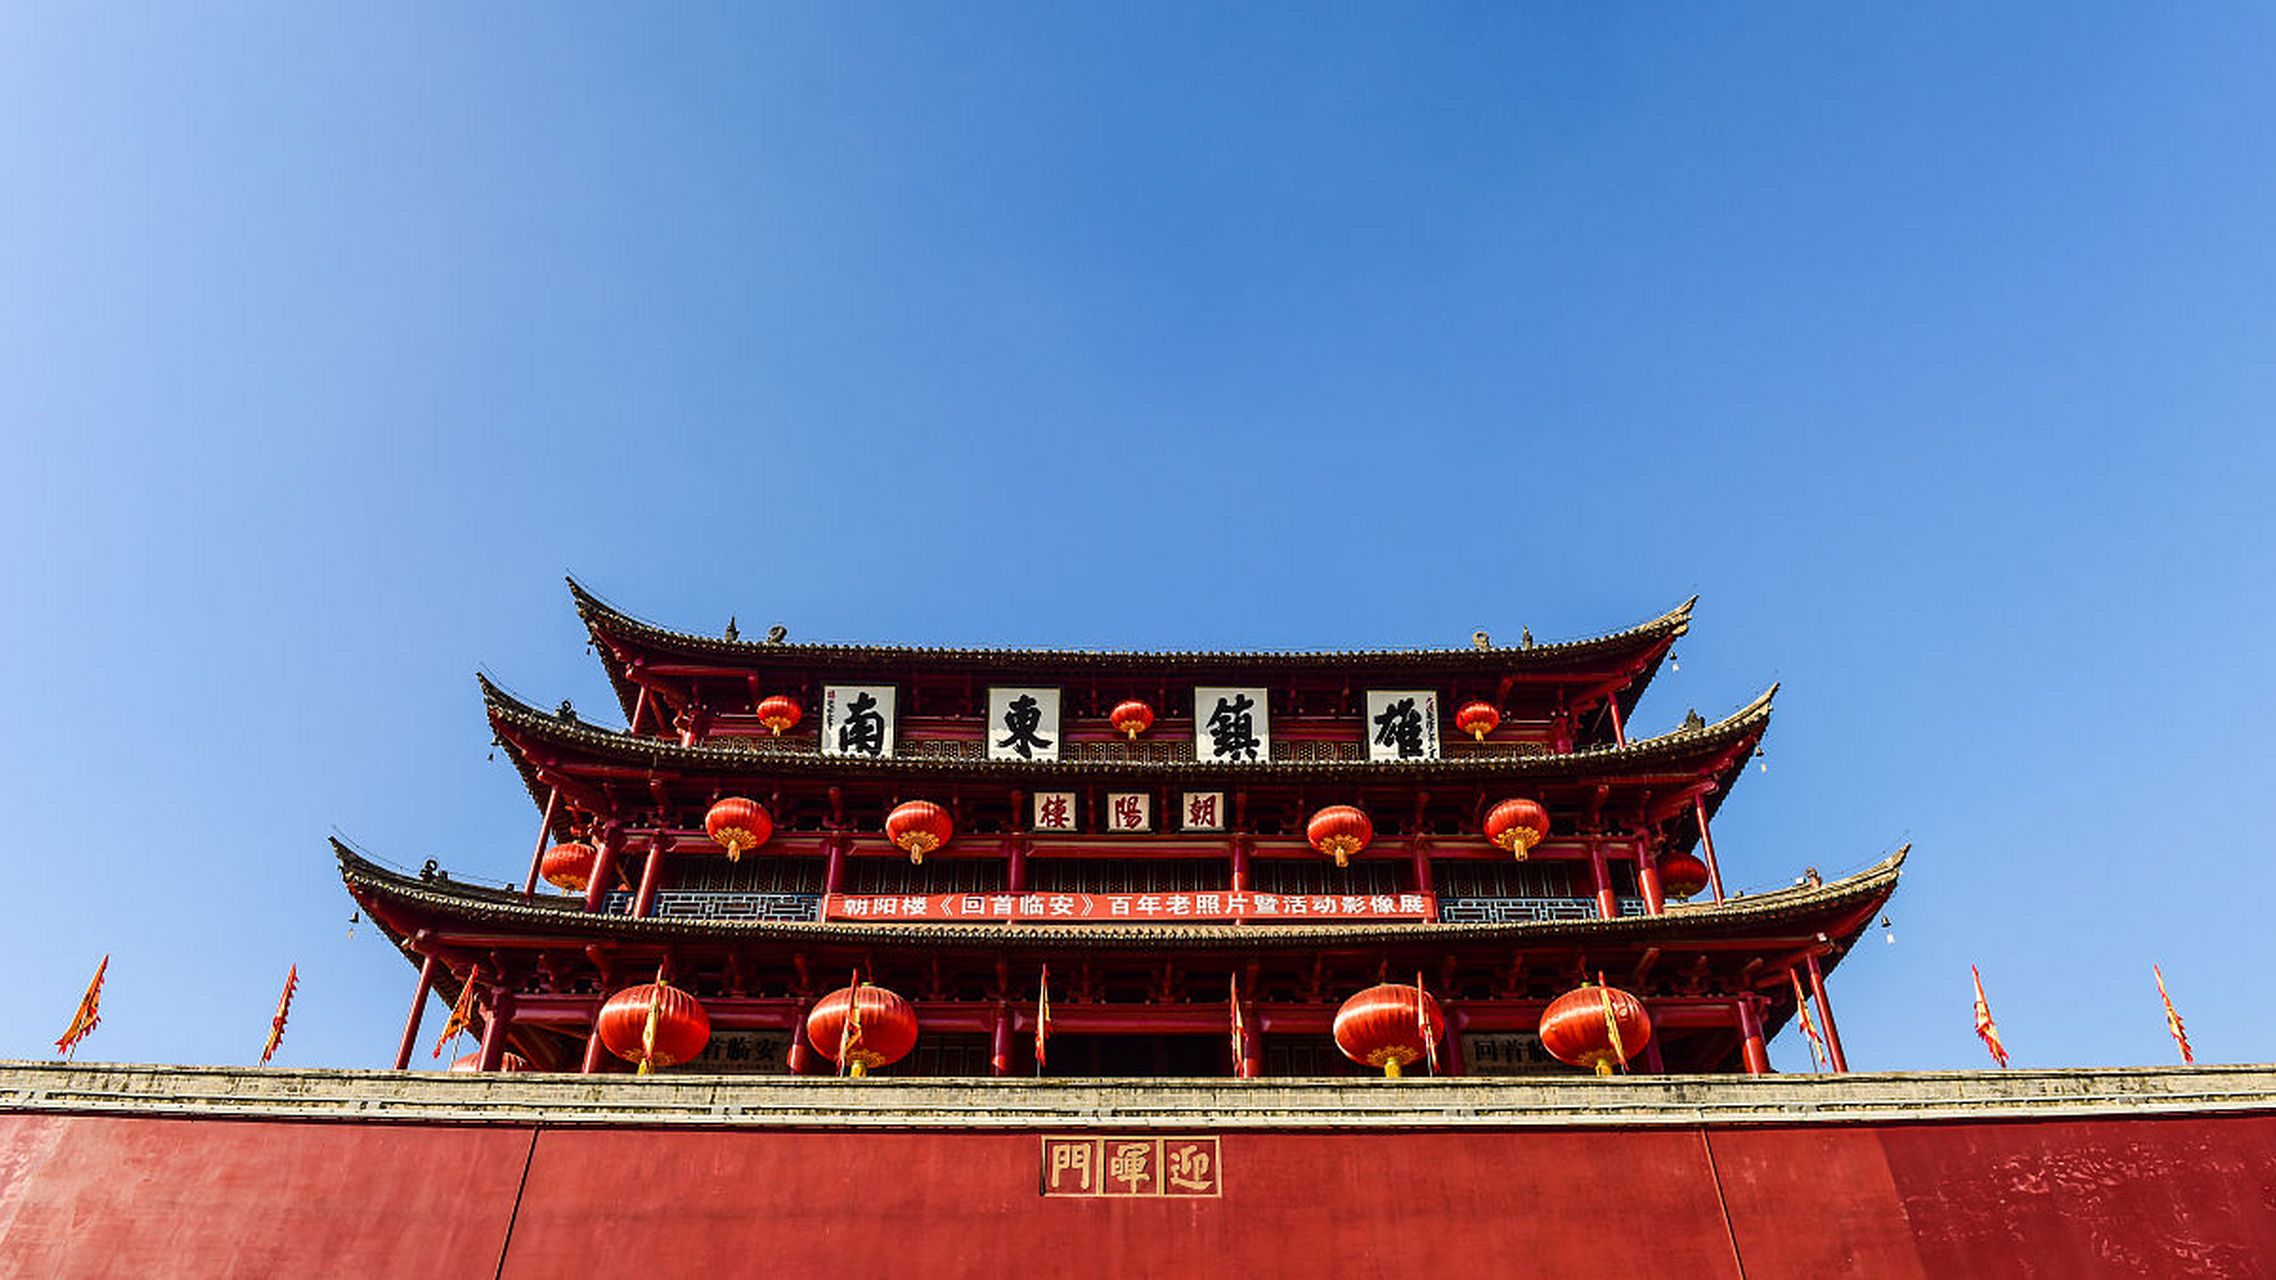 建水古城是云南最值得看的景点,拥有丰富的历史文化遗产和众多的古